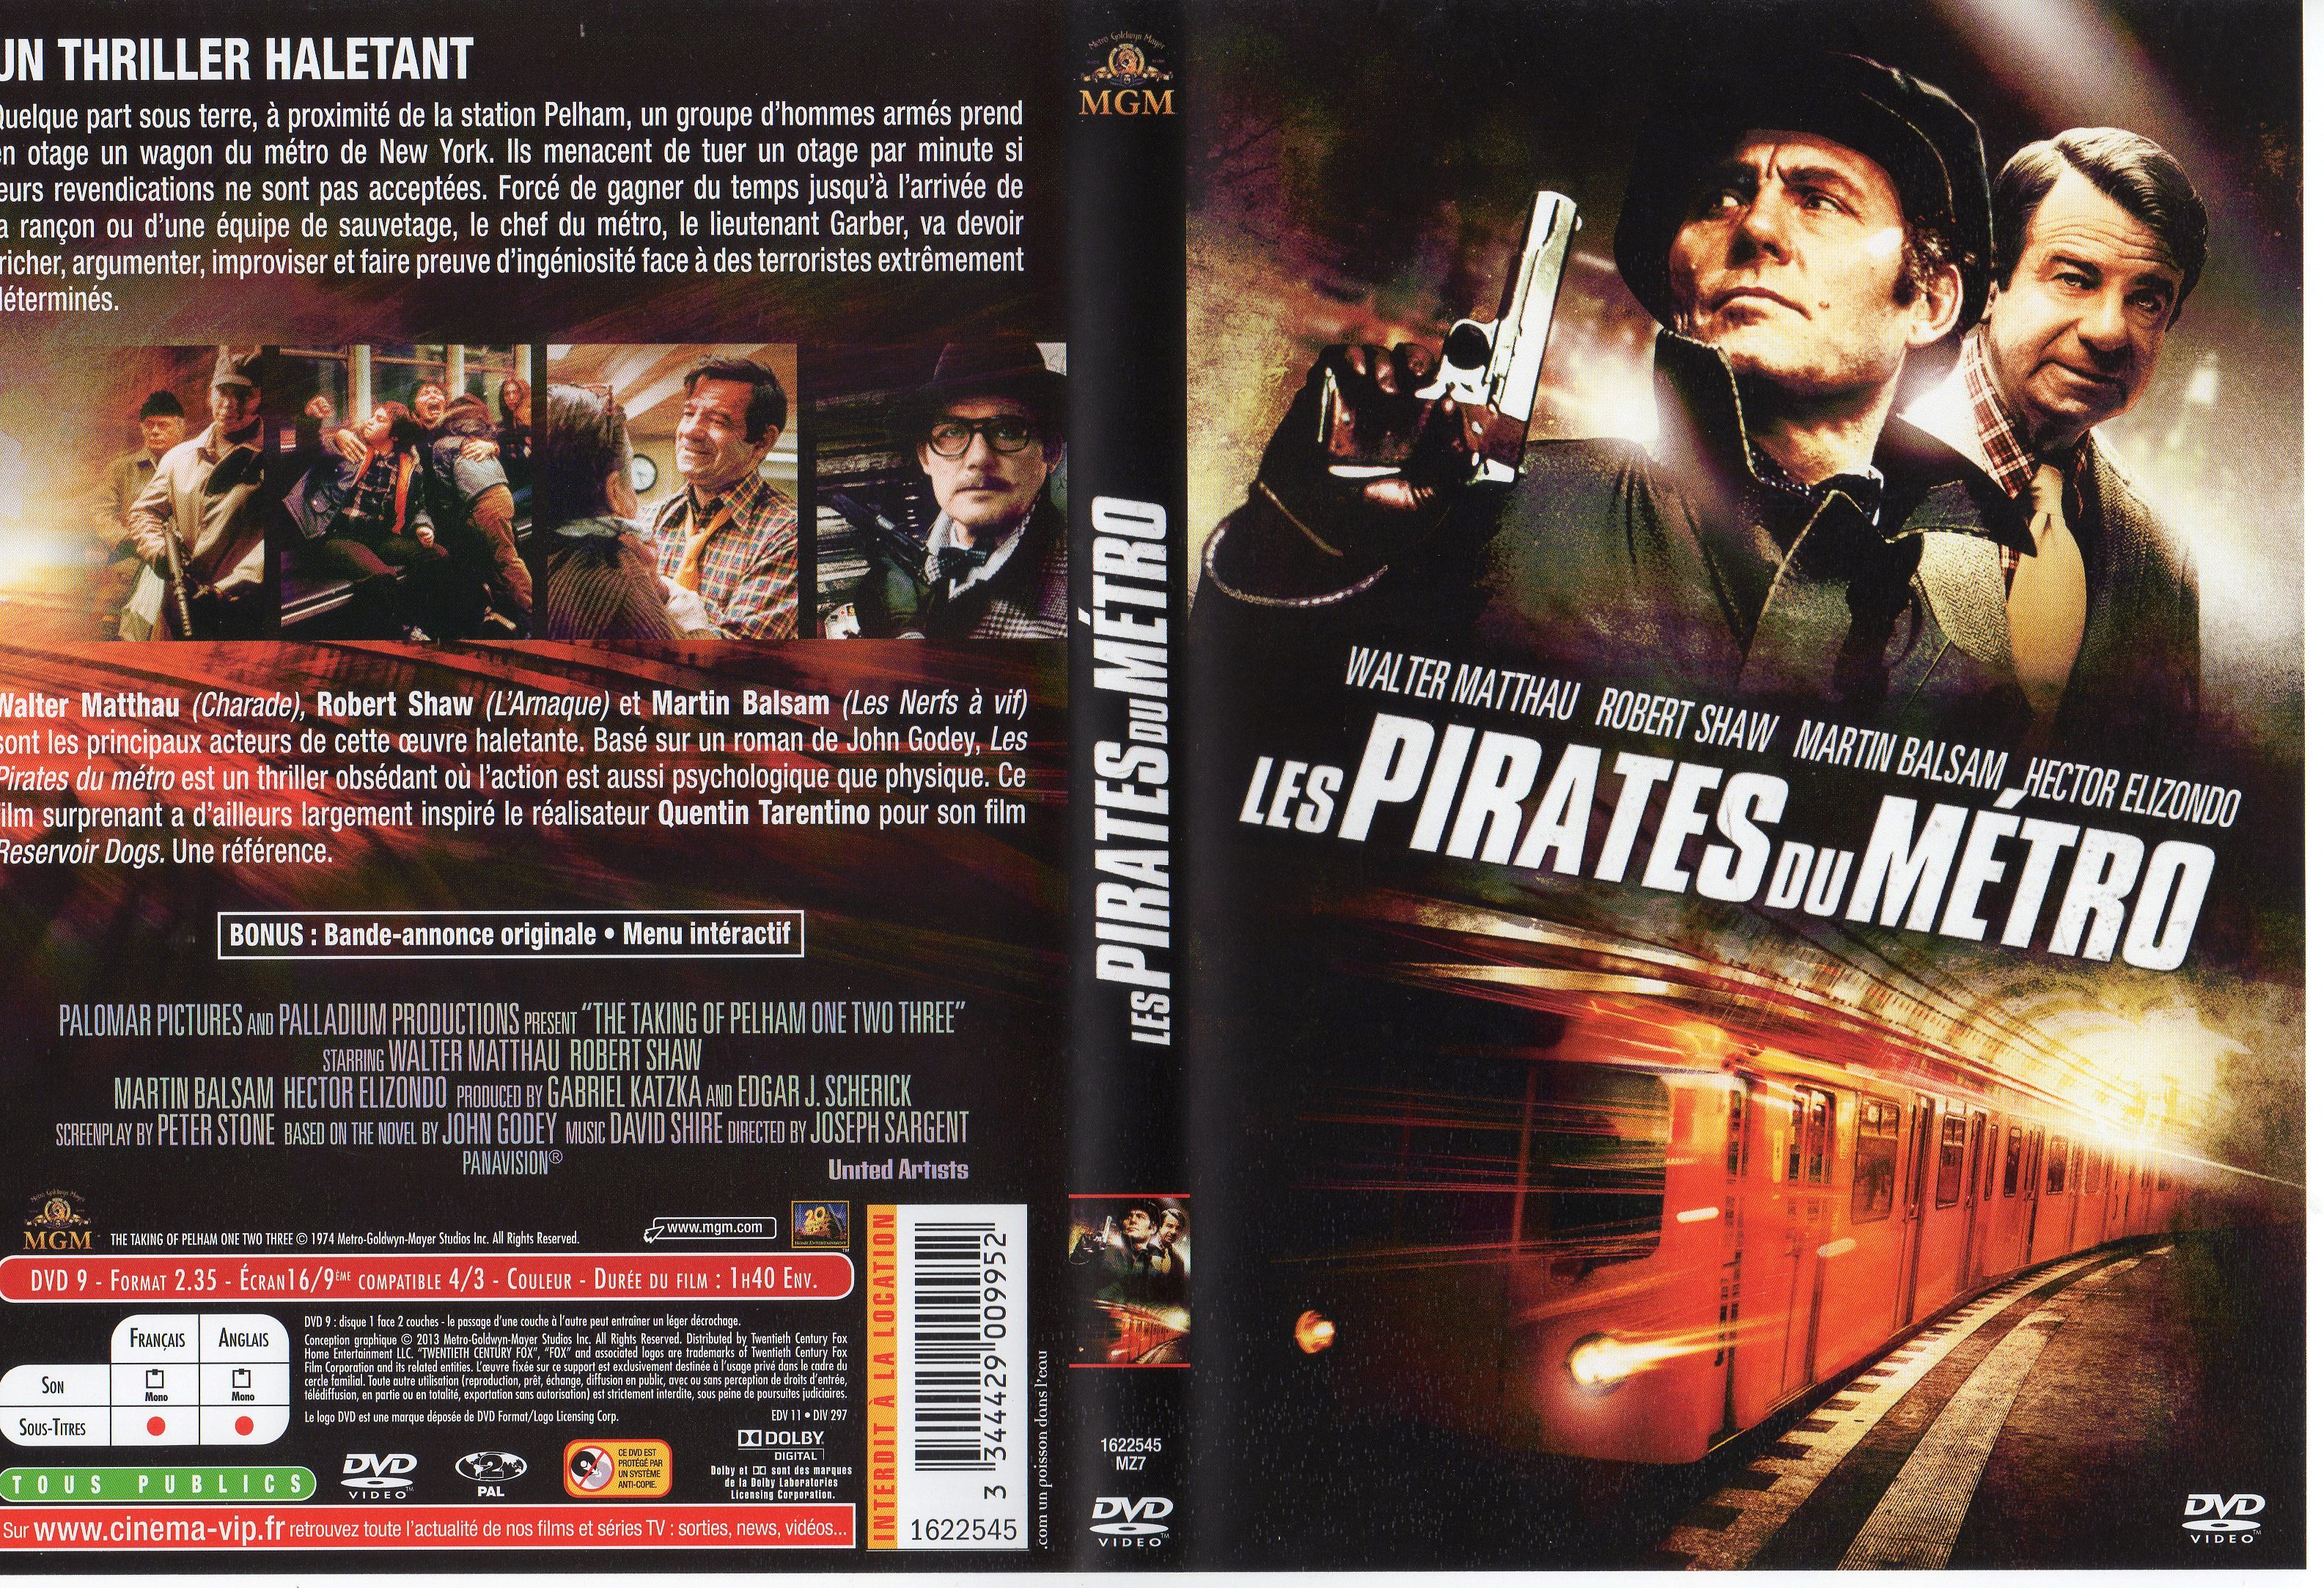 Jaquette DVD Les pirates du mtro v2